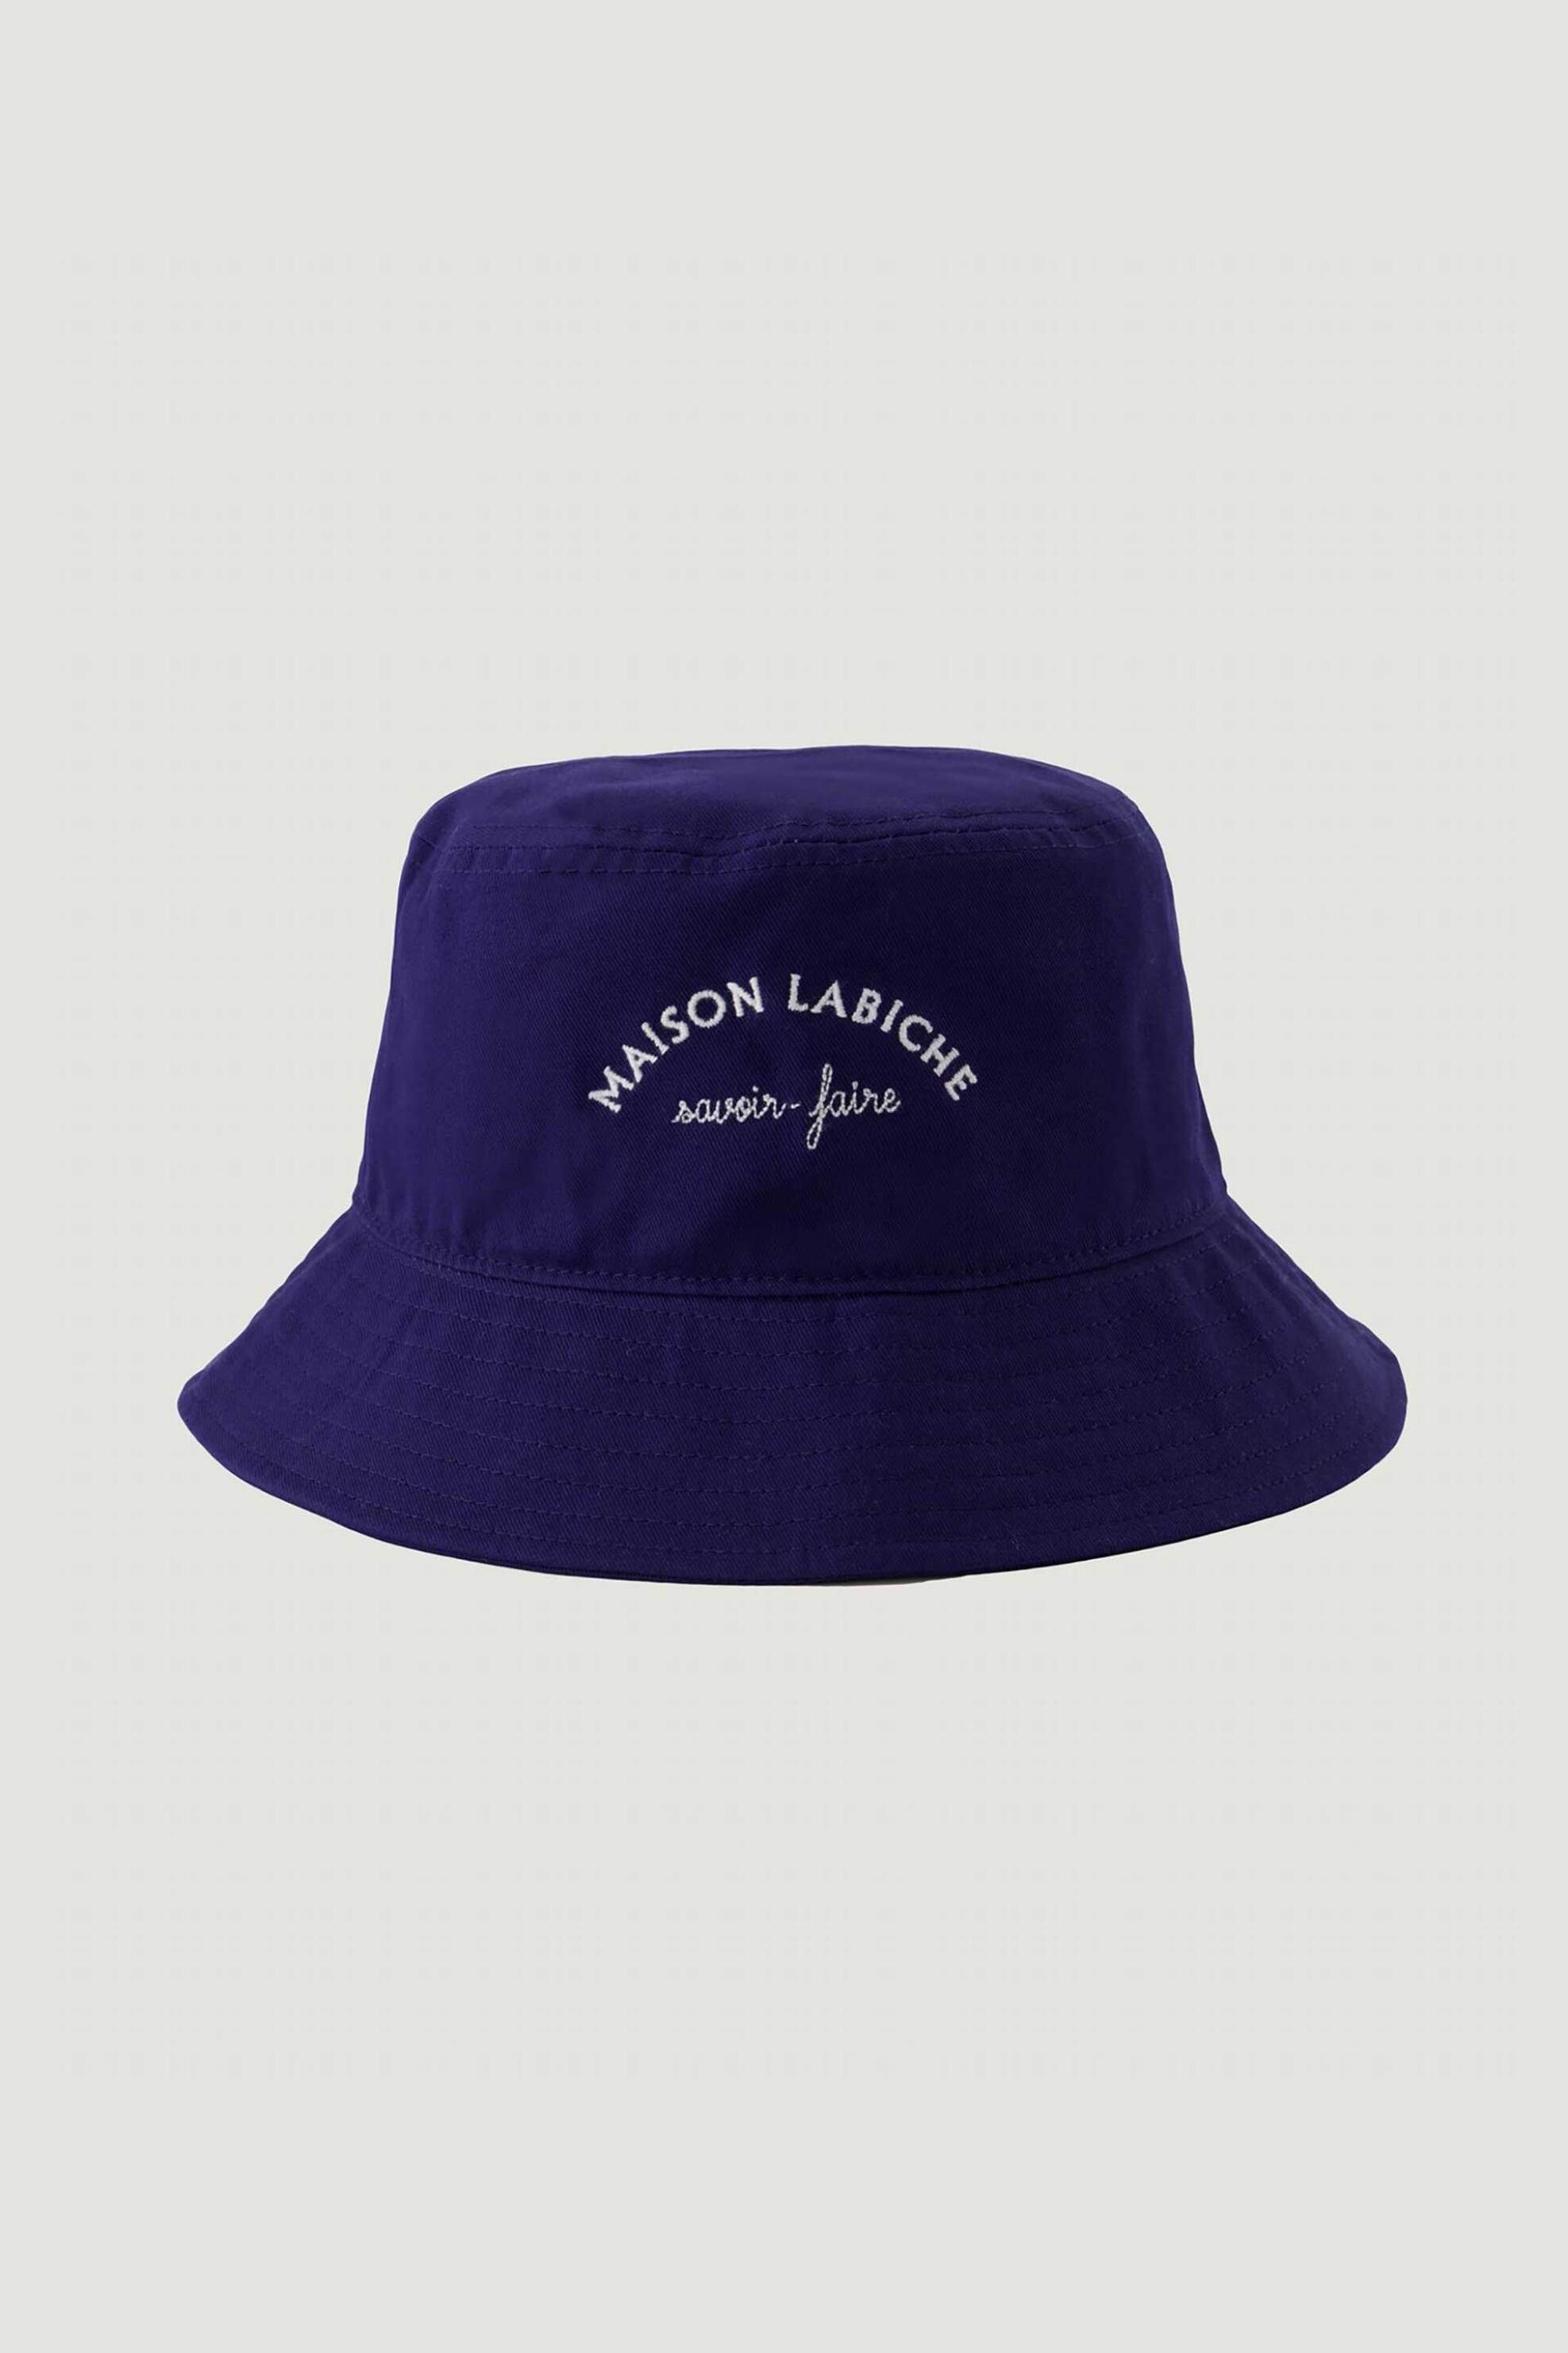 Ανδρική Μόδα > Ανδρικά Αξεσουάρ > Ανδρικά Καπέλα & Σκούφοι Maison Labiche ανδρικό bucket καπέλο με κεντημένο λογότυπο "Joffre" - SAJOFFREMLB Μπλε Σκούρο